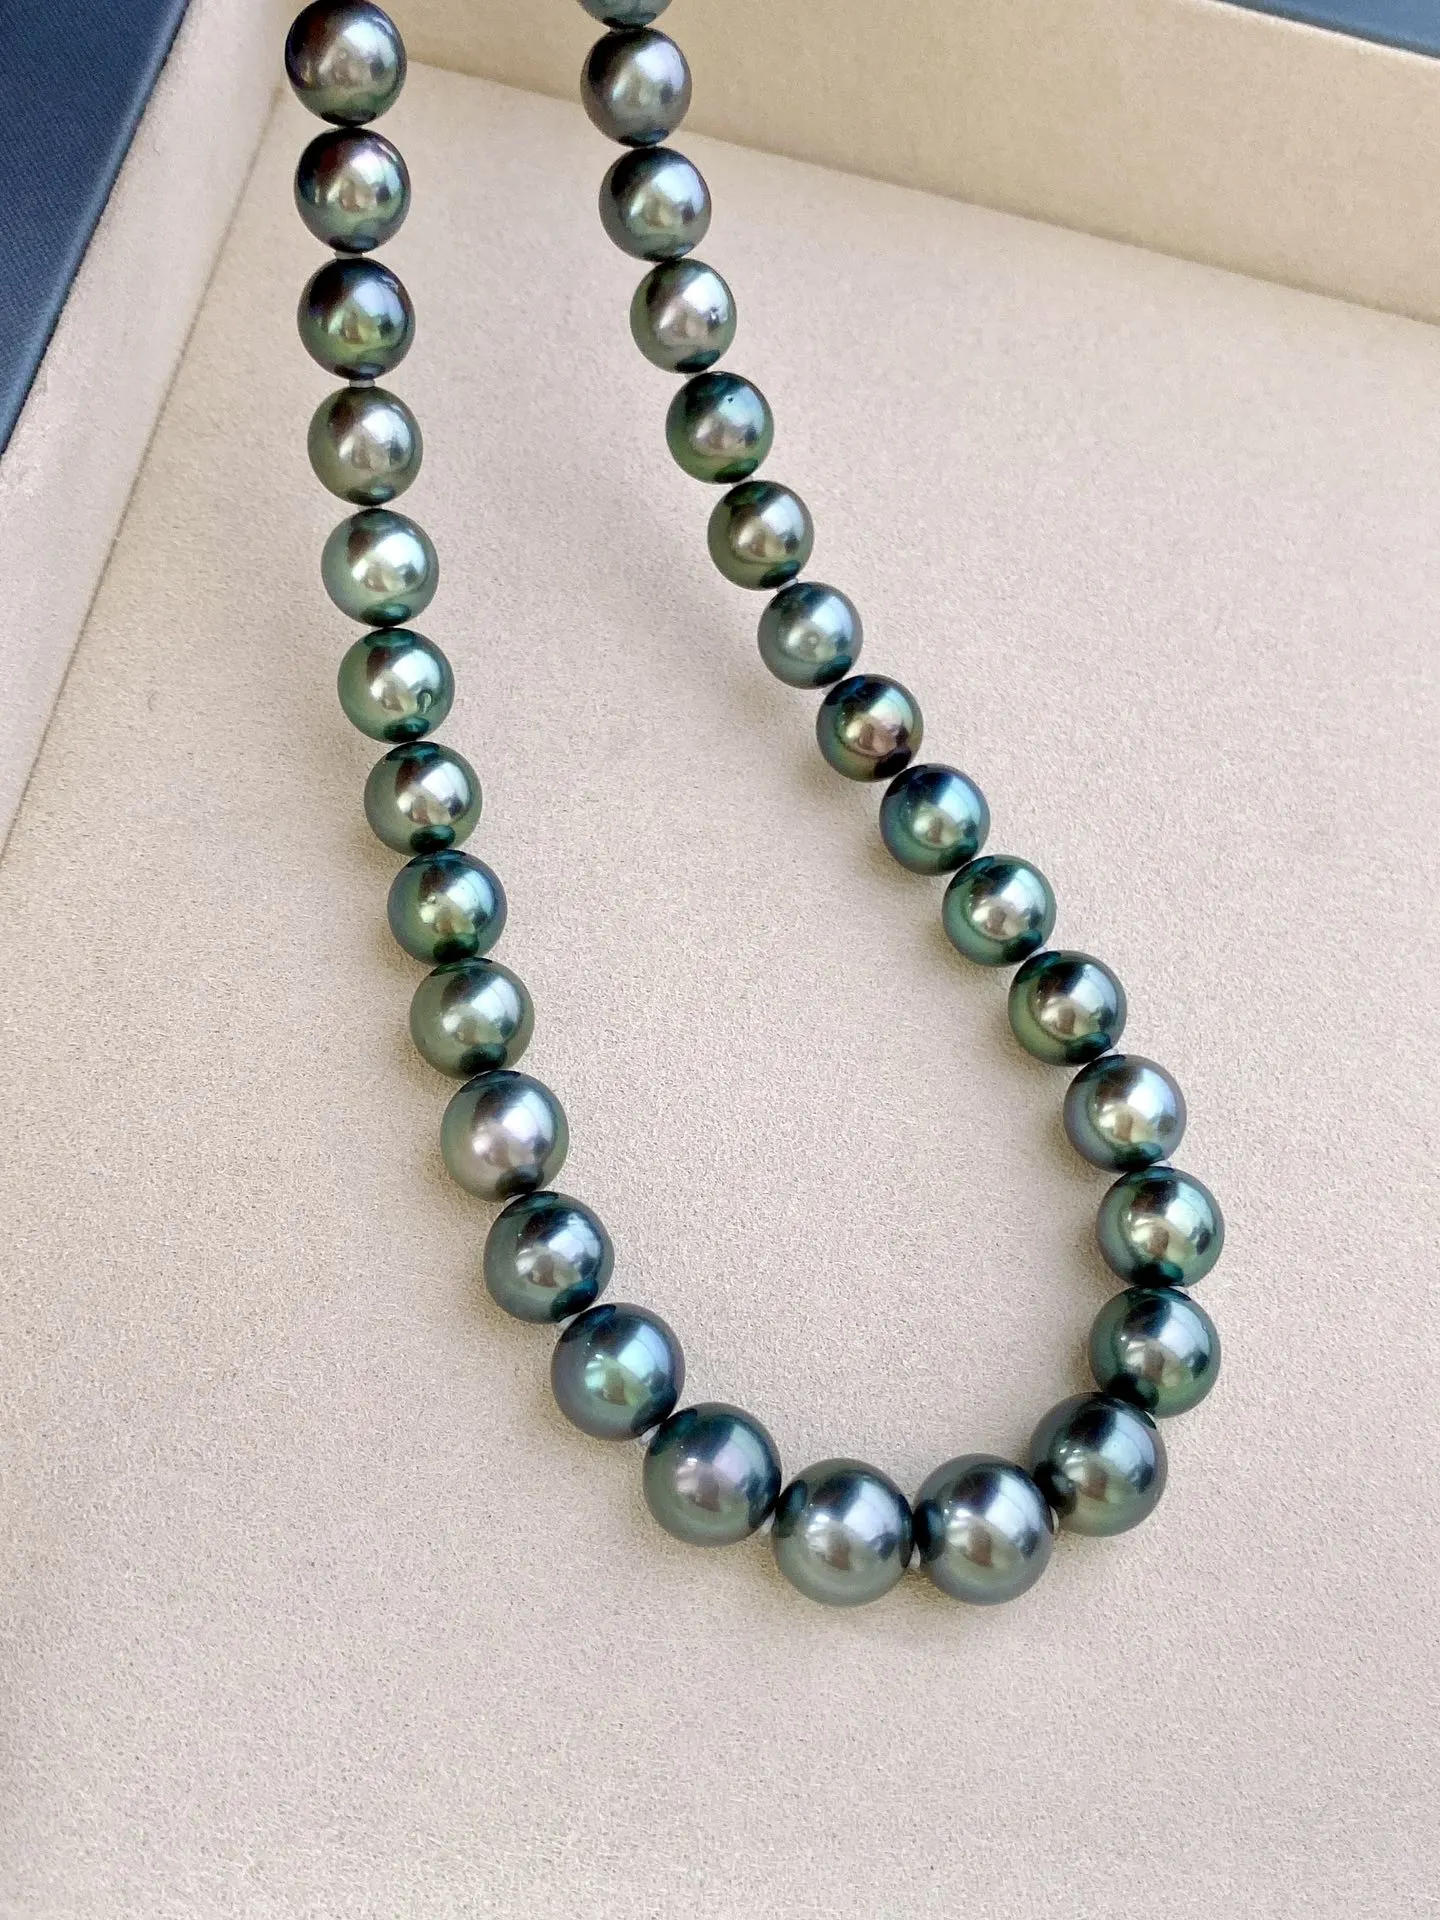 一套孔雀绿项链，颜色漂亮珠光美，规格：8.9-11.1mm，黄金尺寸，耳钉：11-12mm，上身效果赞！同款随机发